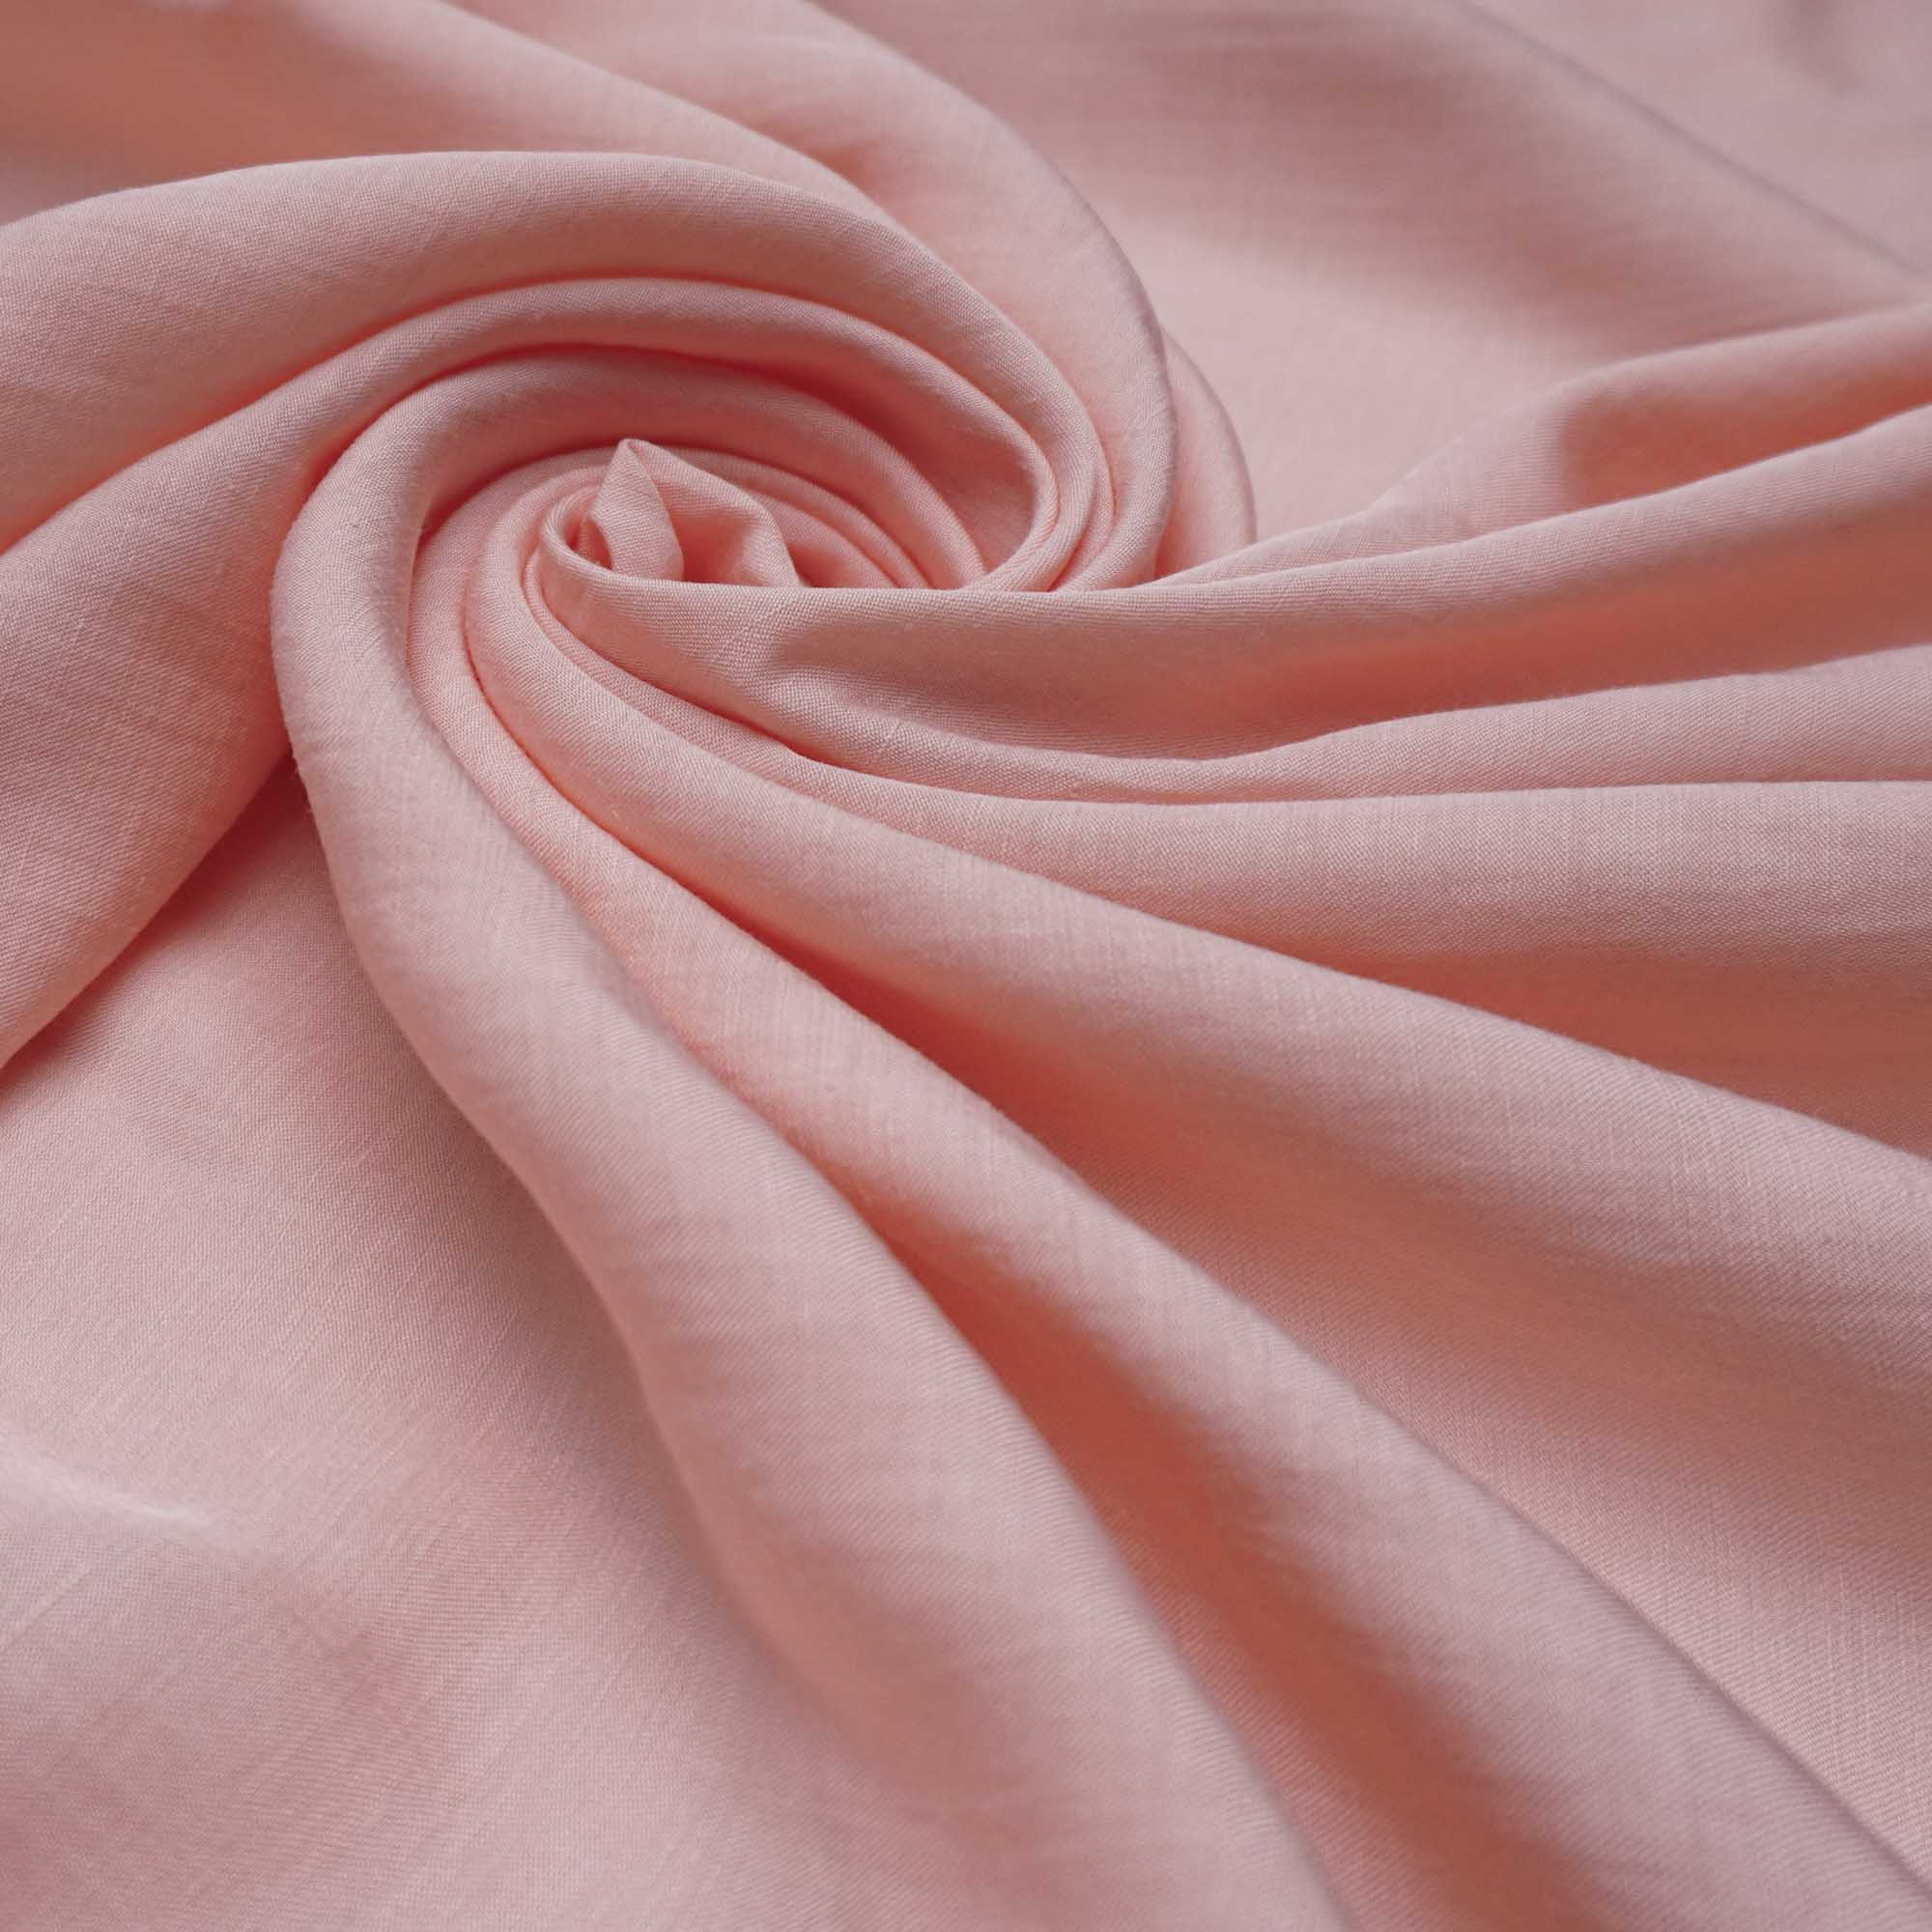 Tecido linho misto rosa pêssego (tecido italiano legítimo)